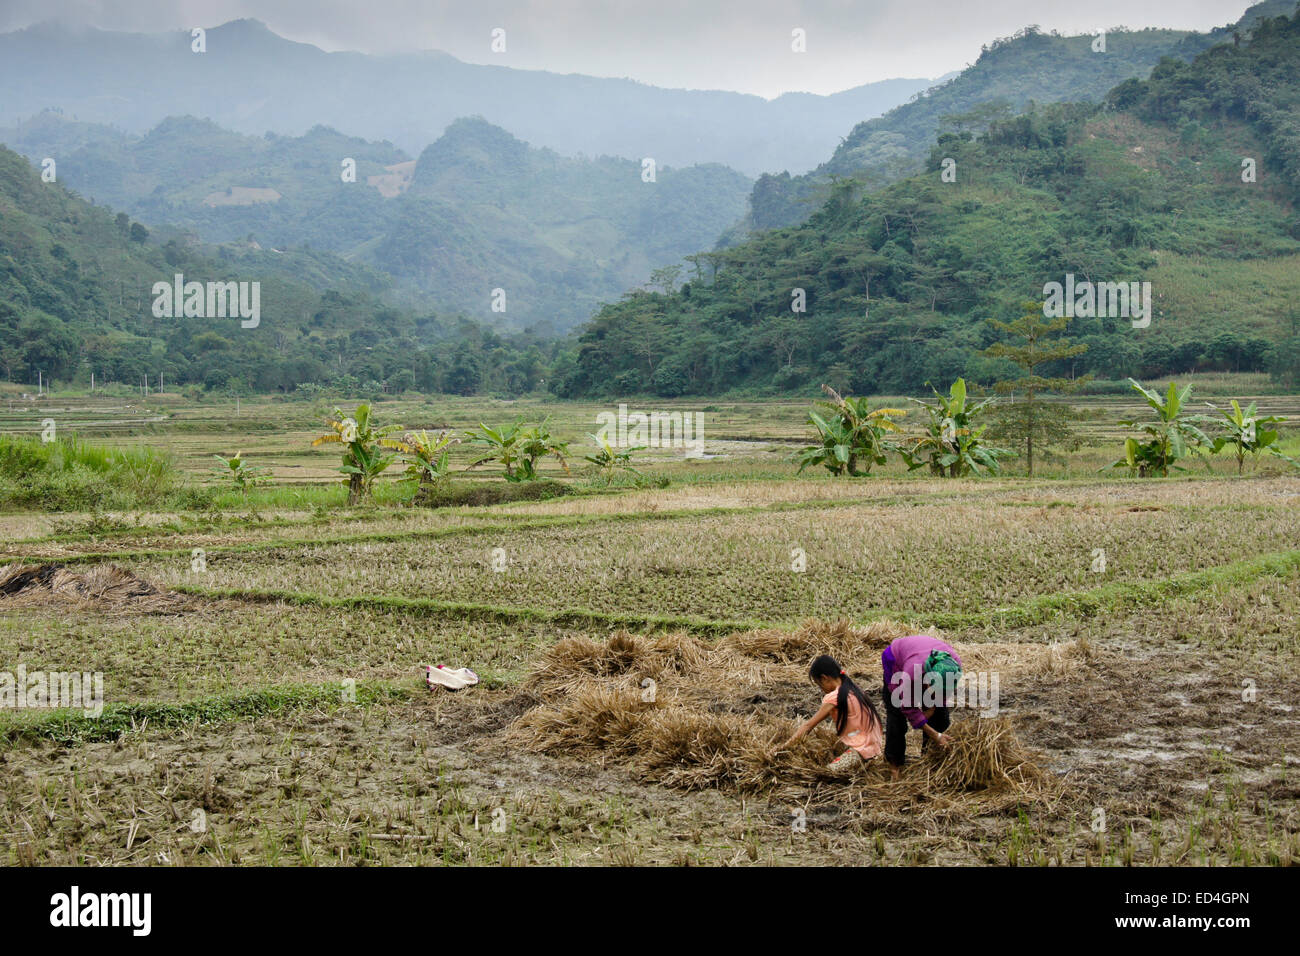 Tay minoranza donna e ragazza alla ricerca di funghi, Trung Do village, Sapa (Sa Pa), Vietnam Foto Stock